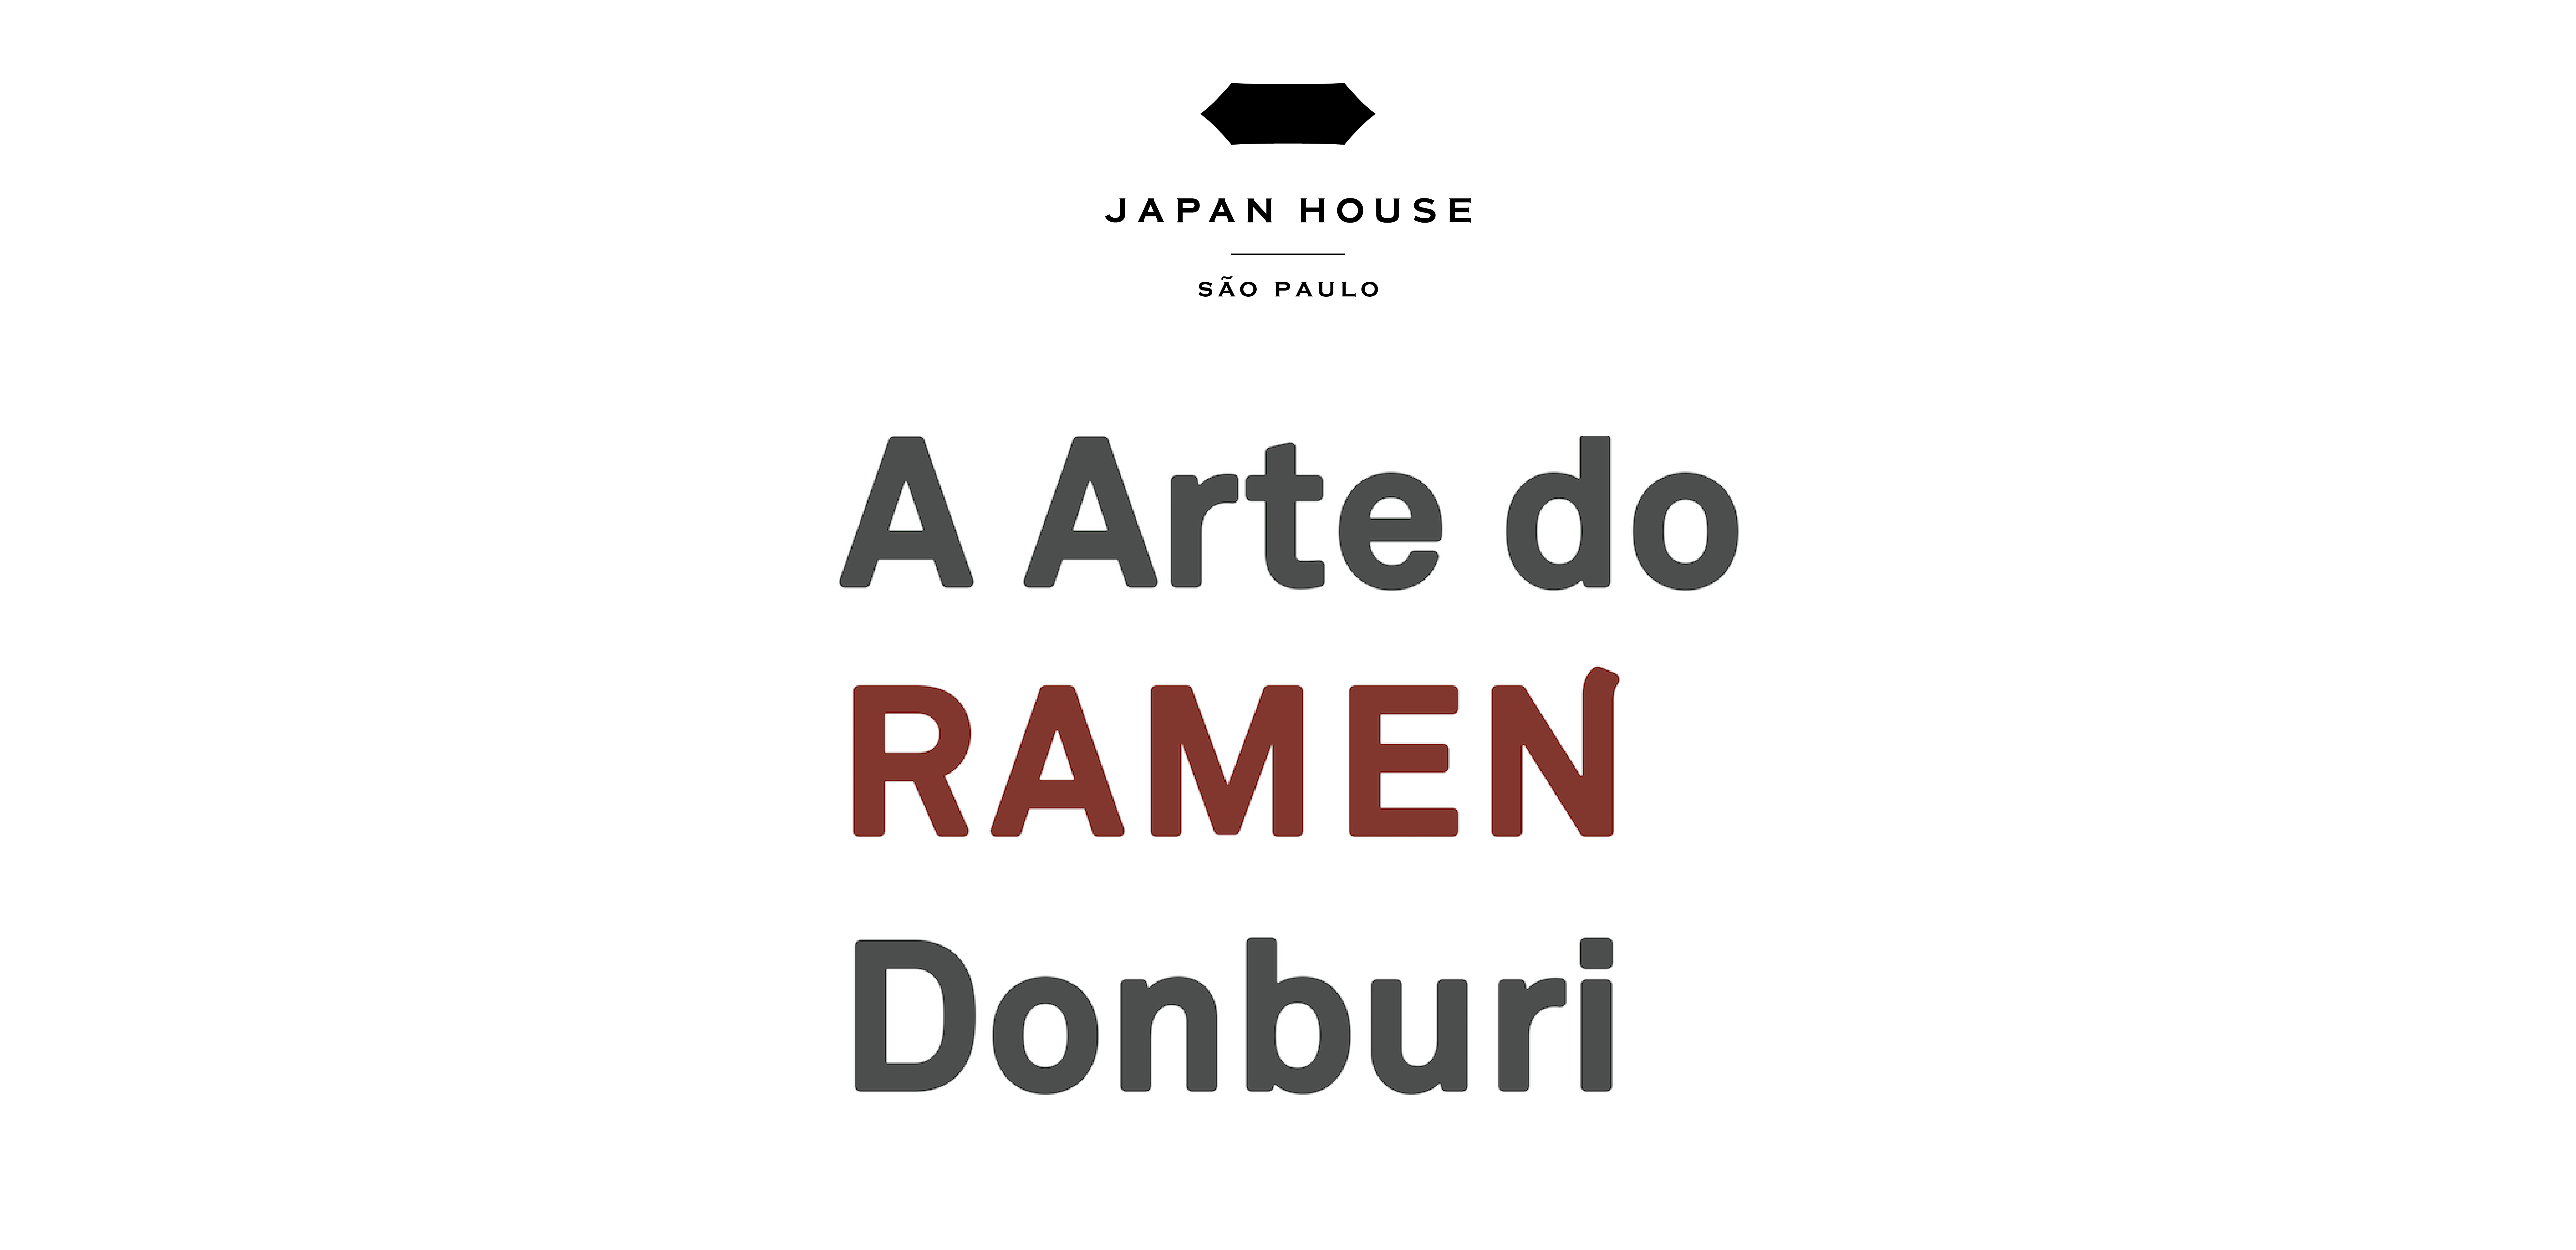 Texto em letras cinzas sobre fundo branco: A arte do Ramen Donburi. A palavra Ramen está escrita em letras vermelhas e maiúsculas.